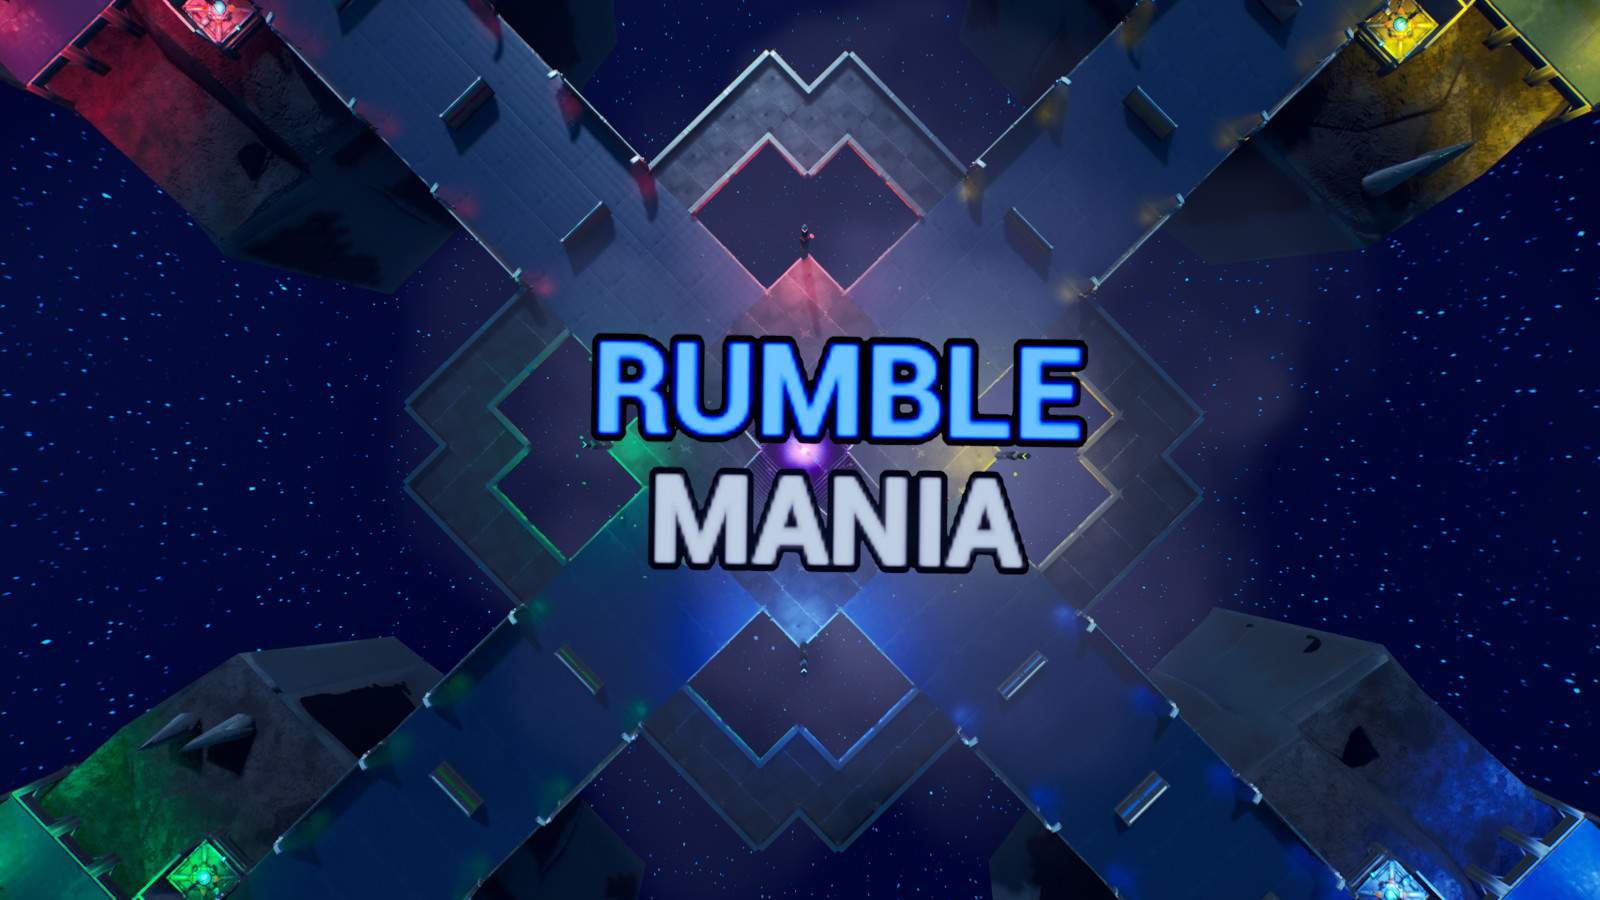 RUMBLE MANIA | SCYTHE EVENT!